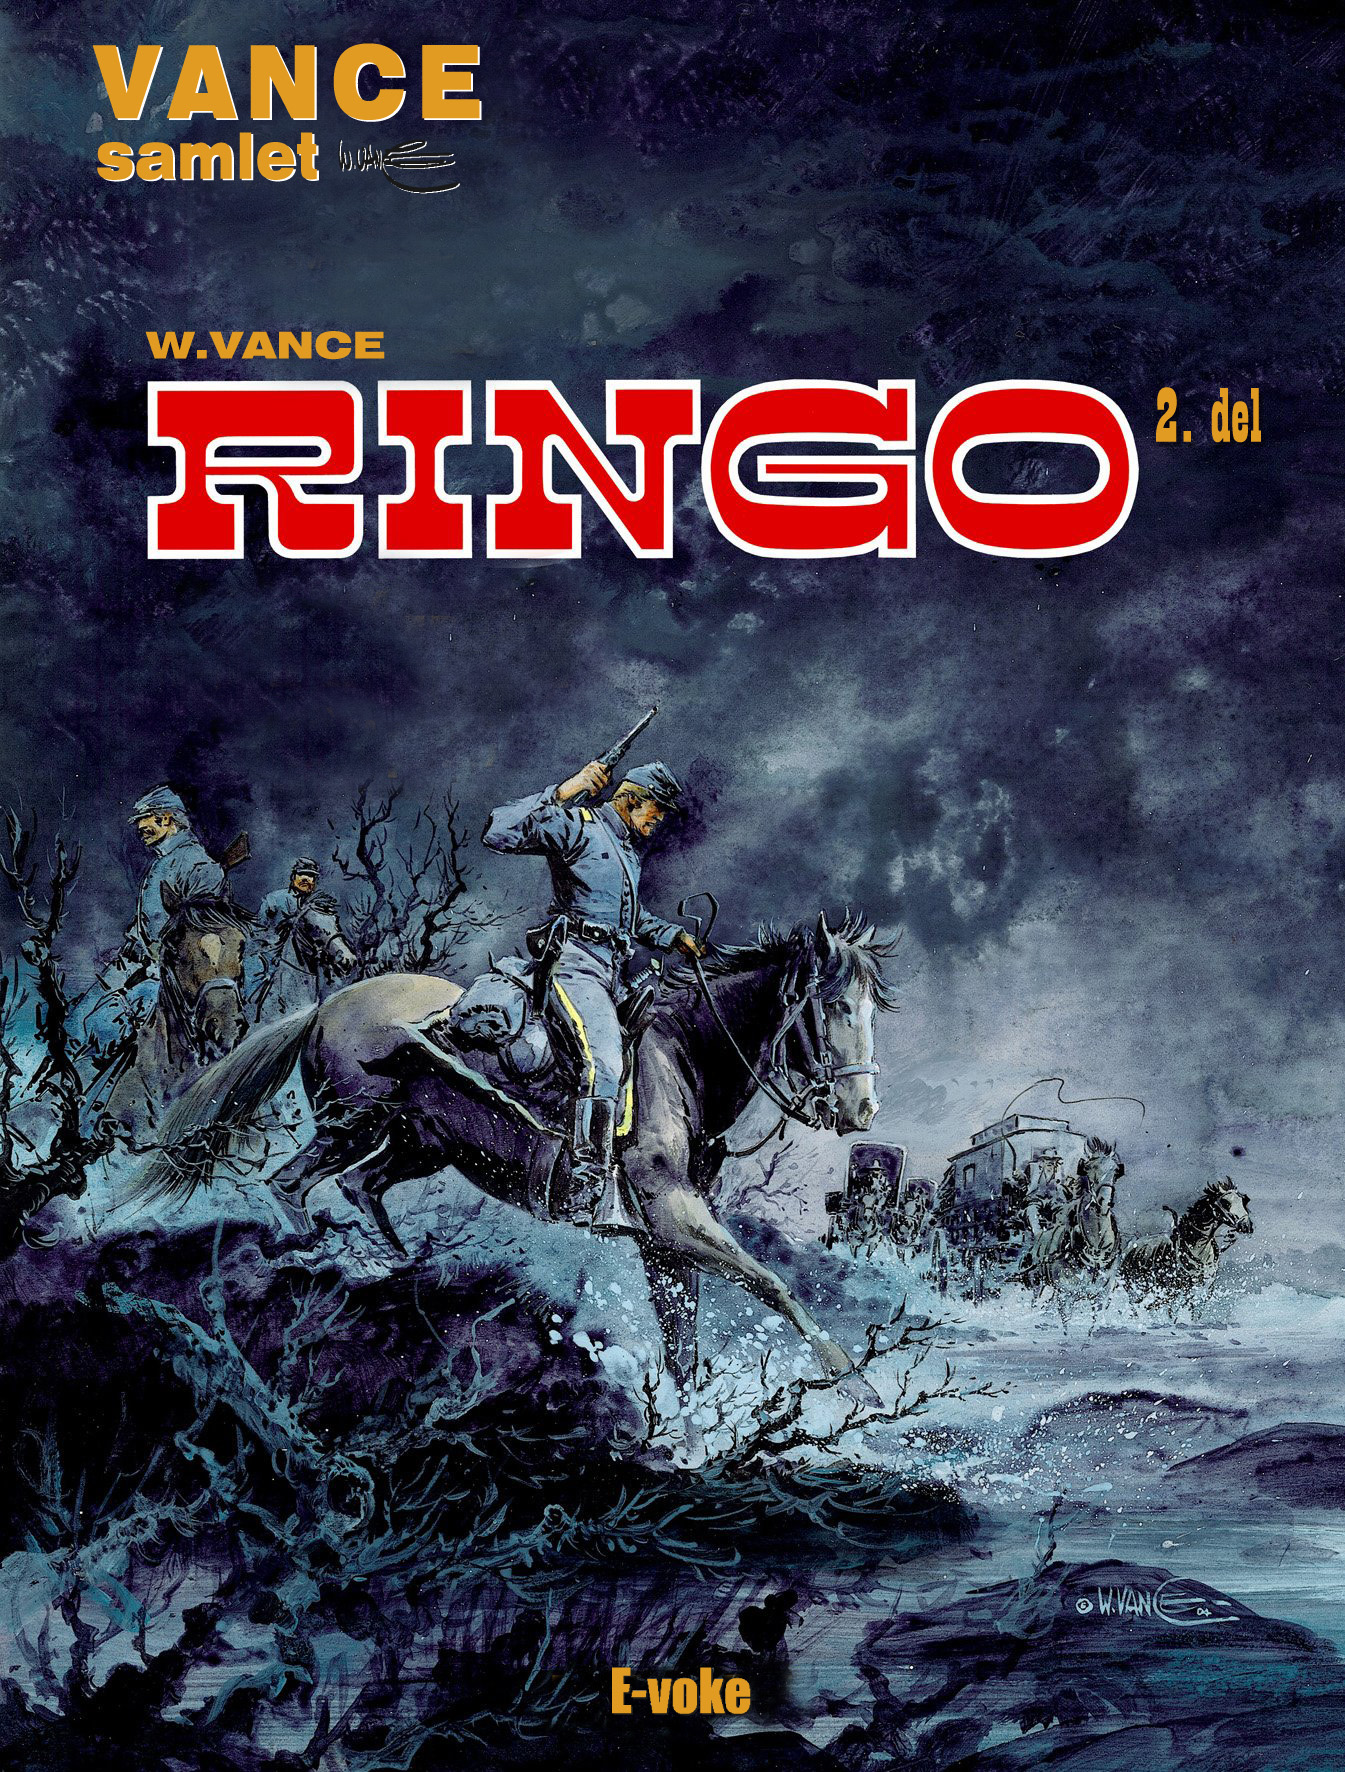 Ringo 2 – E-voke. Udkommer  oktober